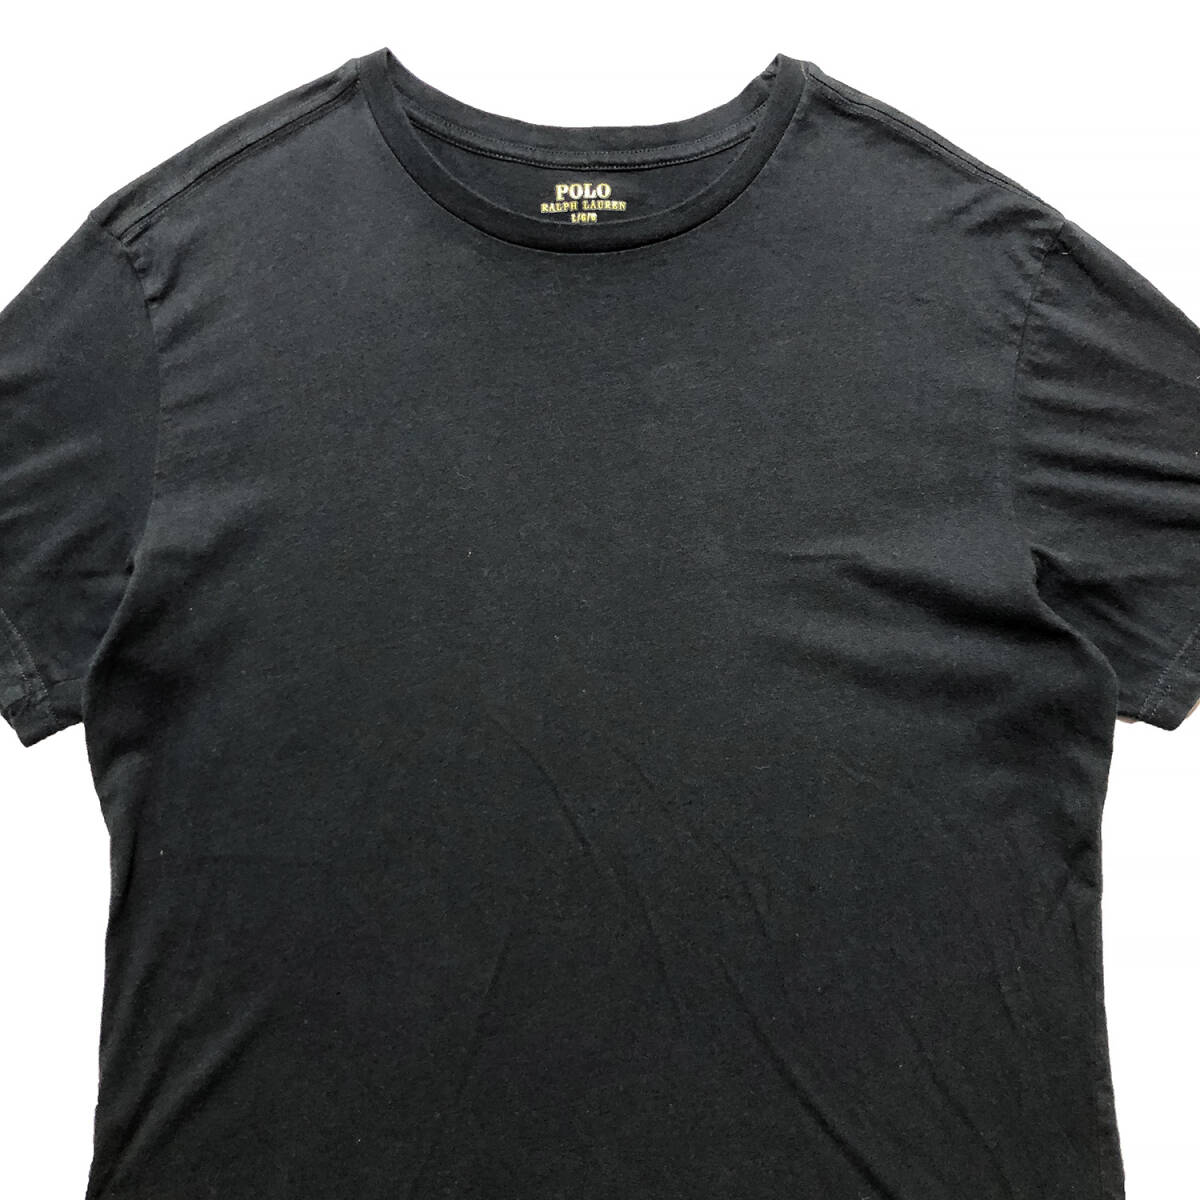 USA 古着 ポロ ラルフローレン 刺繍ロゴ クルーネック Tシャツ 無地 メンズL ブラック POLO RALPH LAUREN 黒色 BA2570